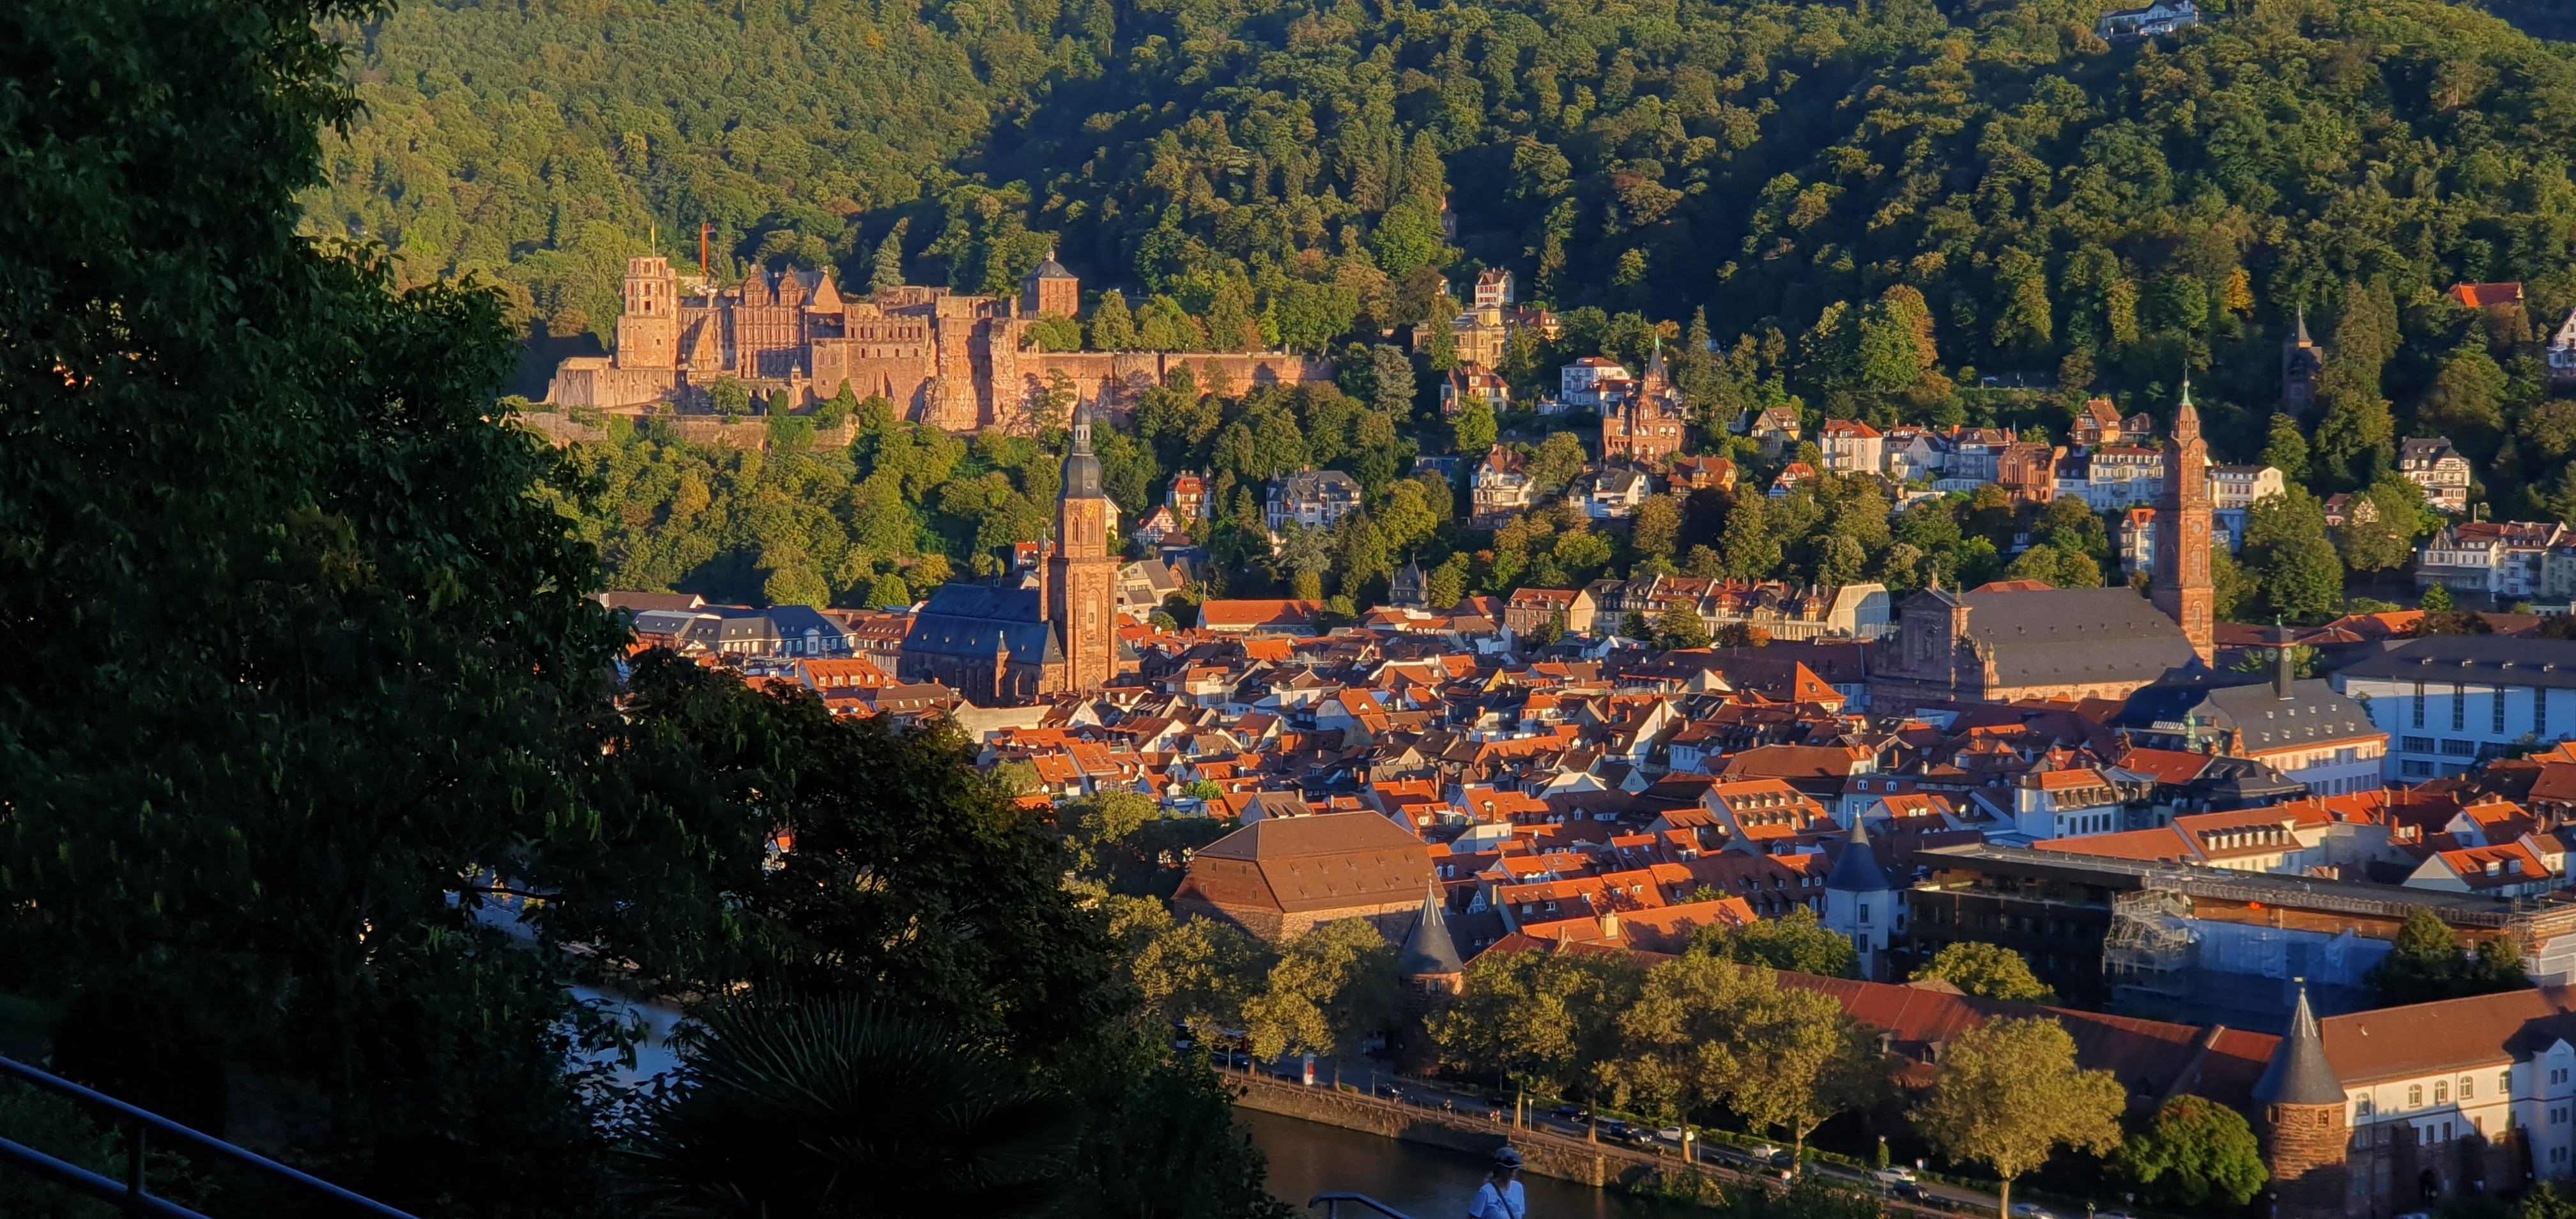 Hus, slott og kirker i byen Heidelberg. Foto